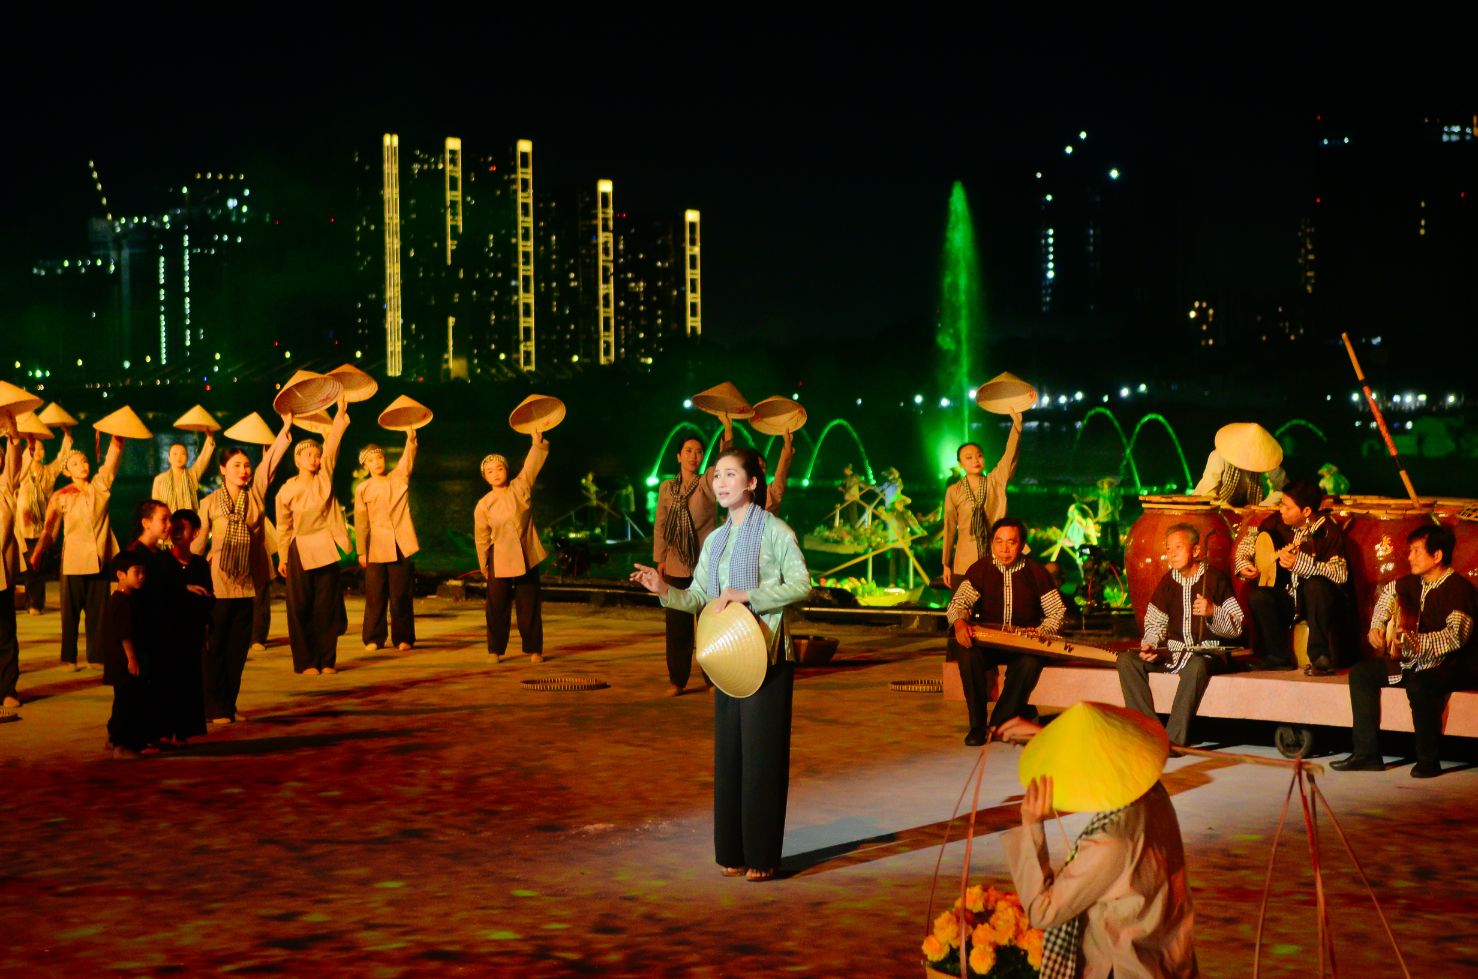 Hoa hậu cải lương Như Huỳnh Dòng sông kể chuyện 1 Hoa hậu cải lương Như Huỳnh xúc động khi hát tại thương cảng Sài Gòn 160 năm tuổi